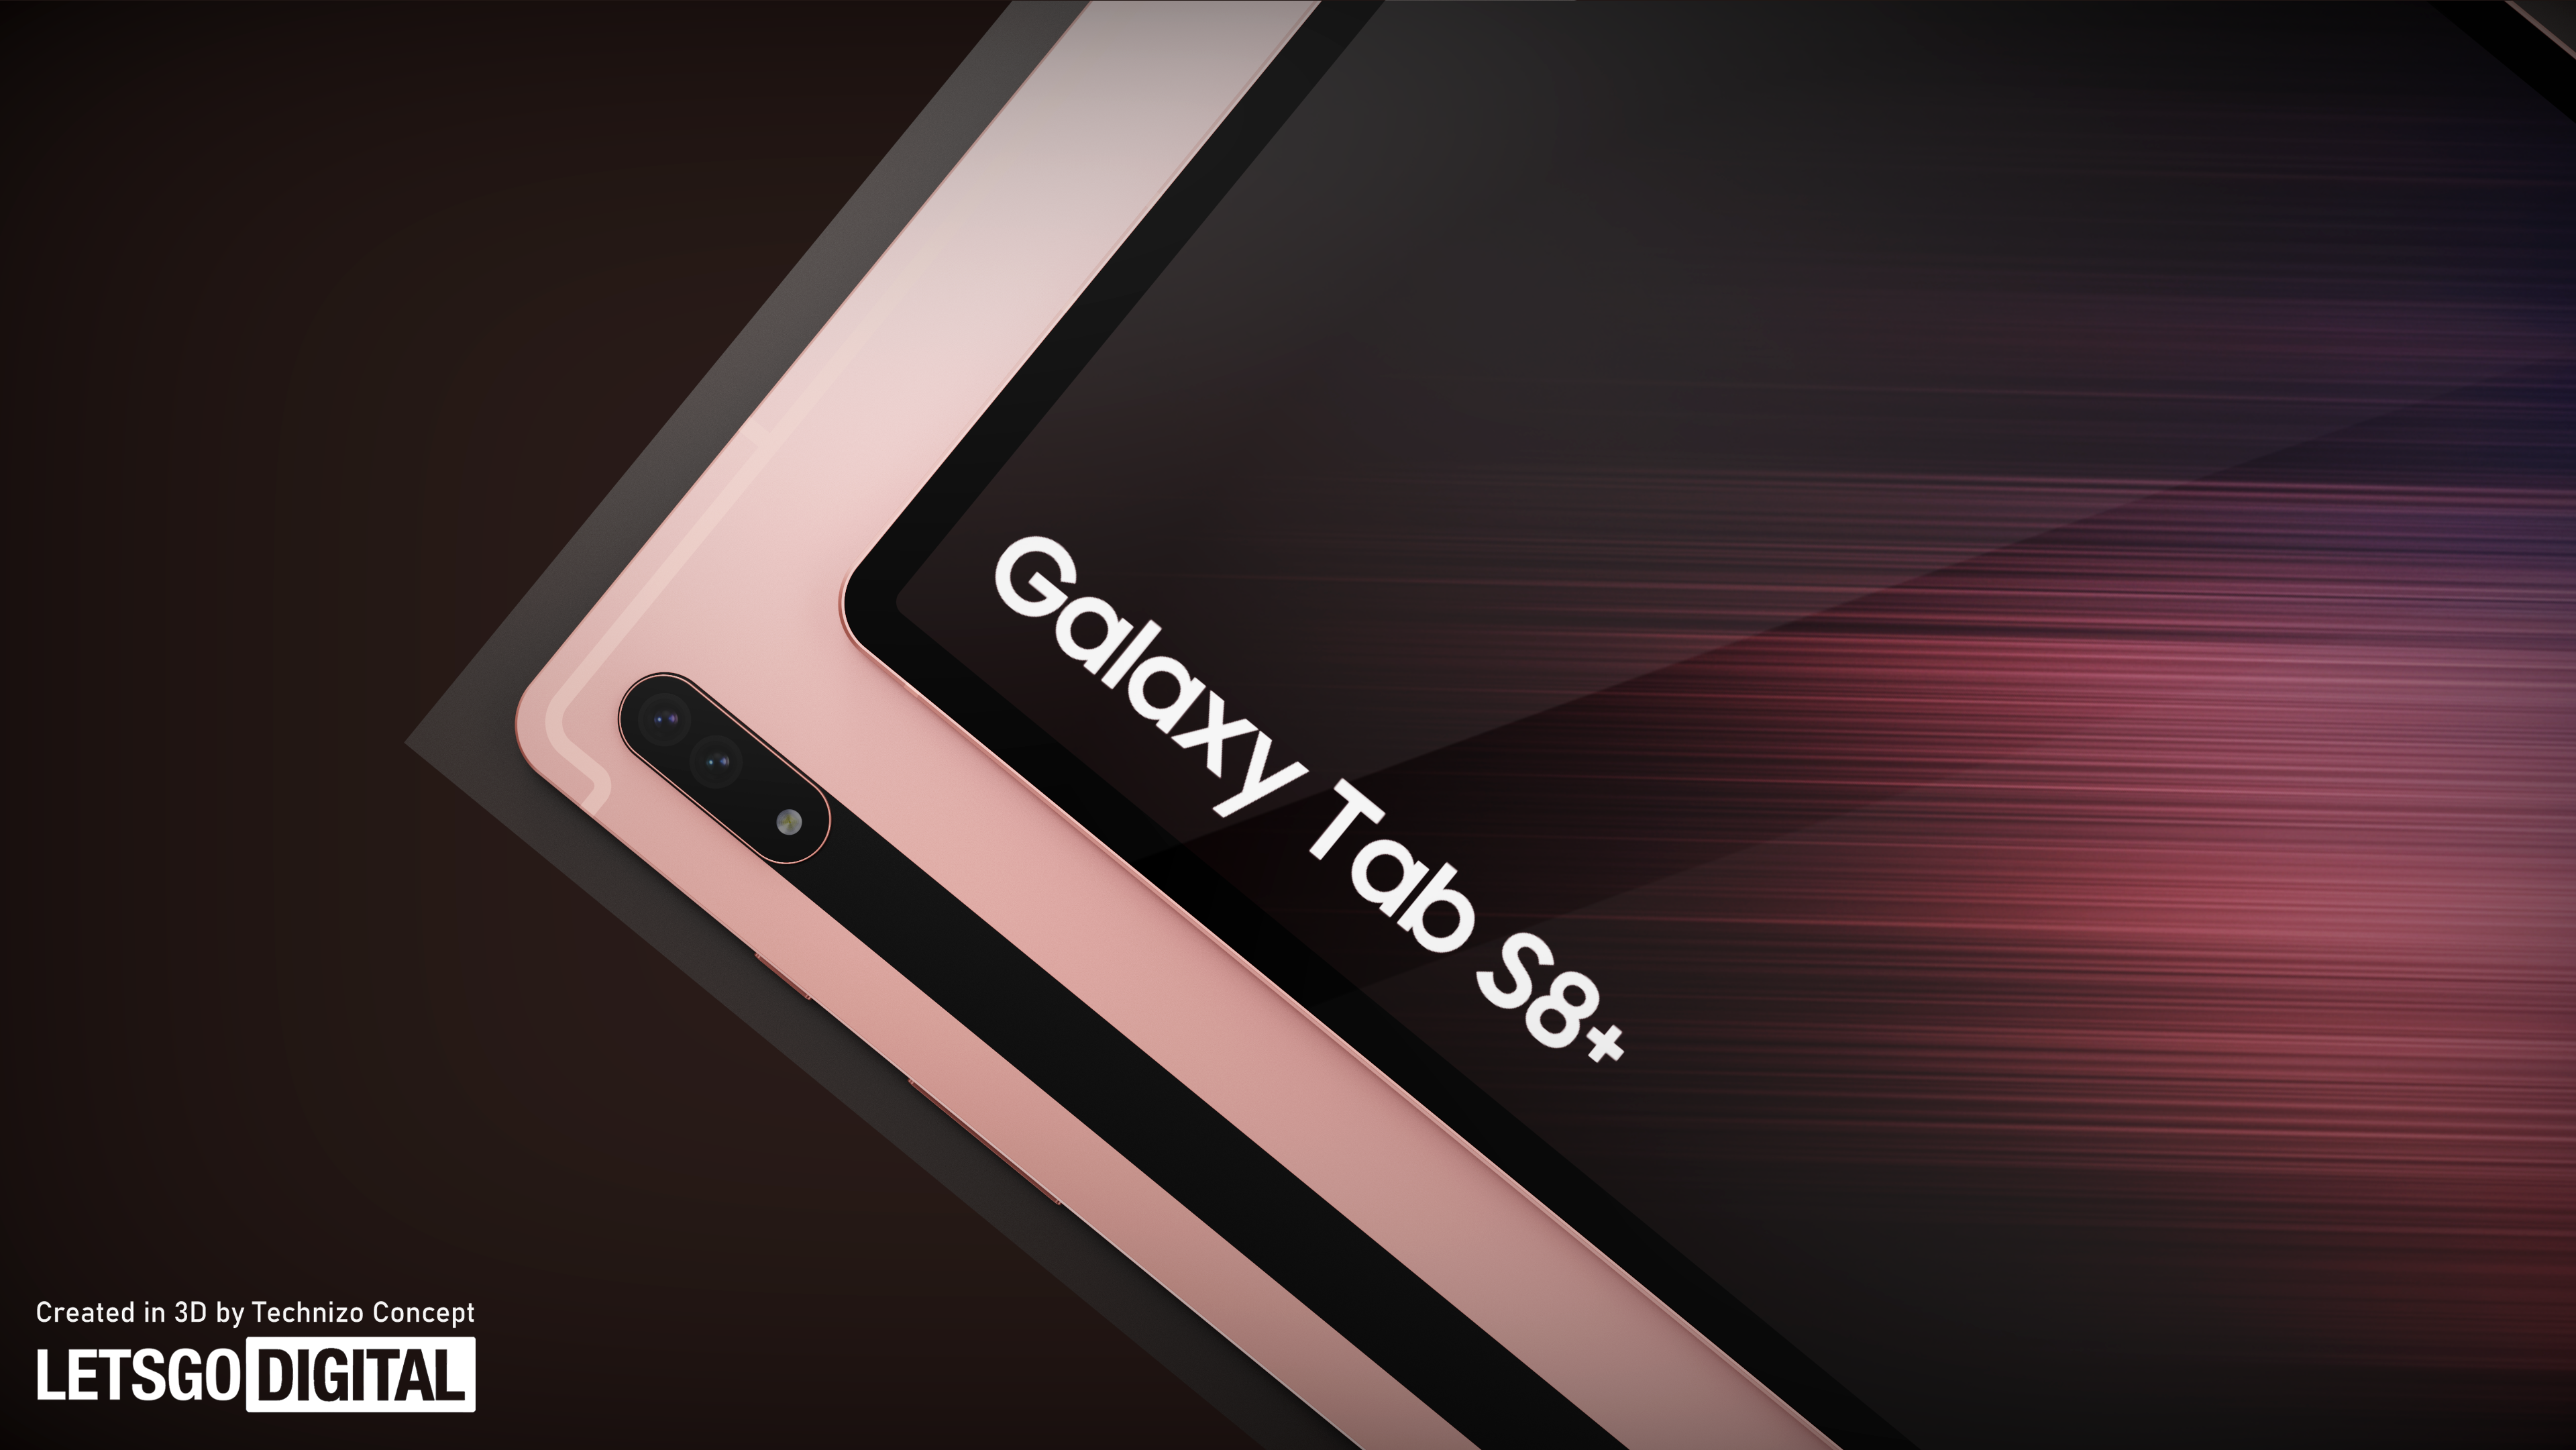 Samsung Galaxy S8 Plus | LetsGoDigital